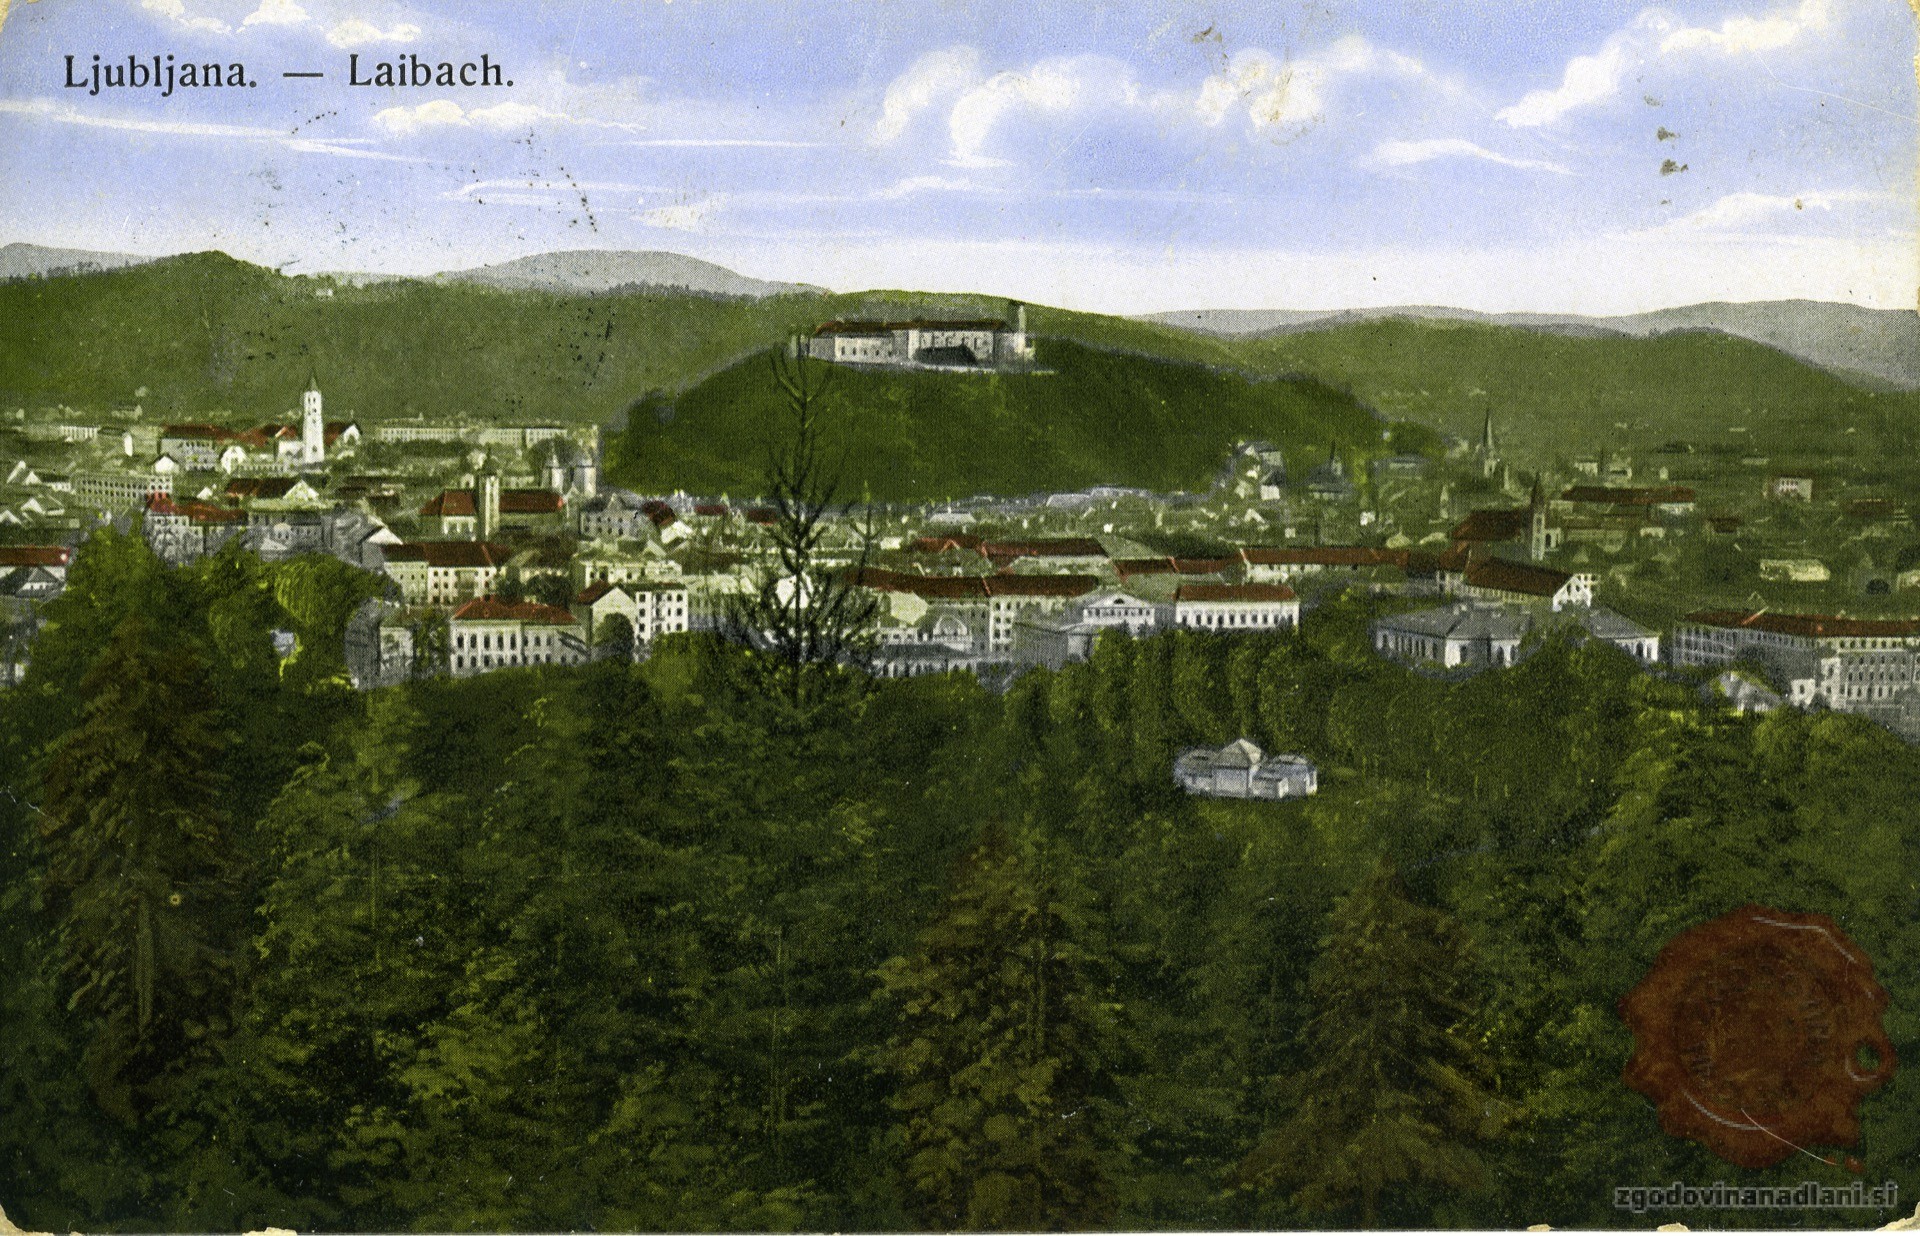 Ljubljanski_grad_Tivoli_Ljubljana_1915